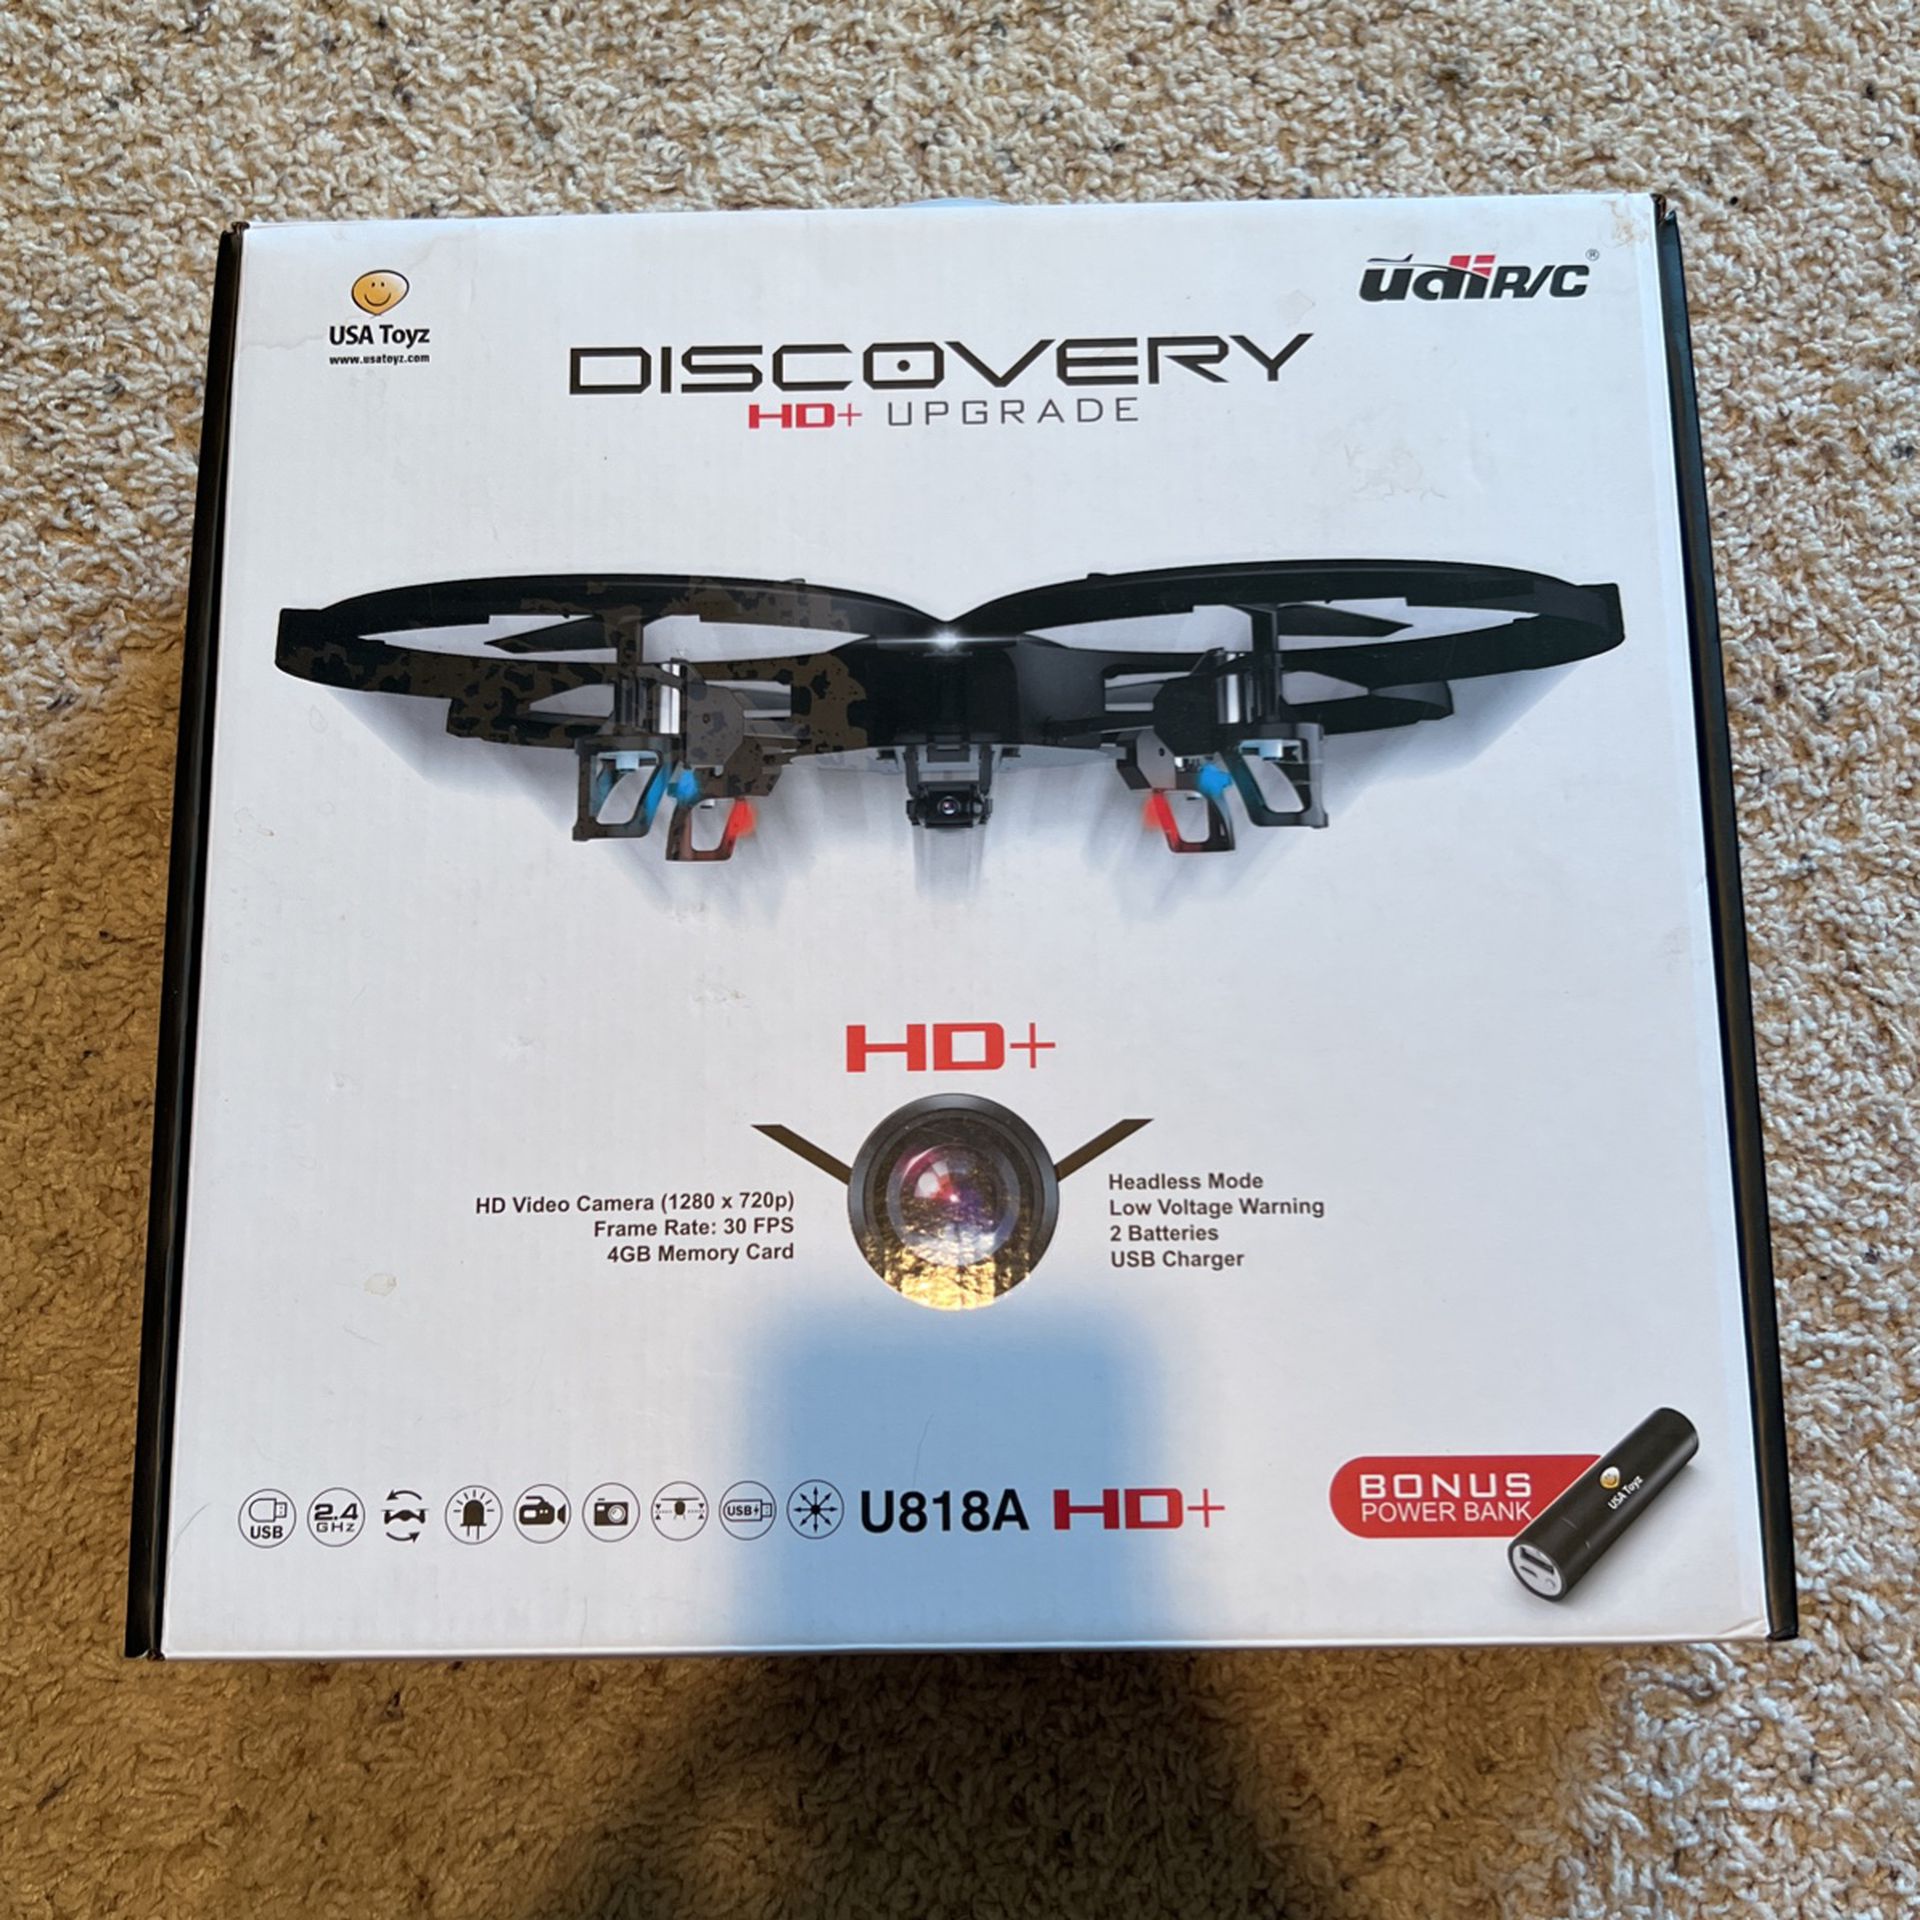 U818A HD+ Drone